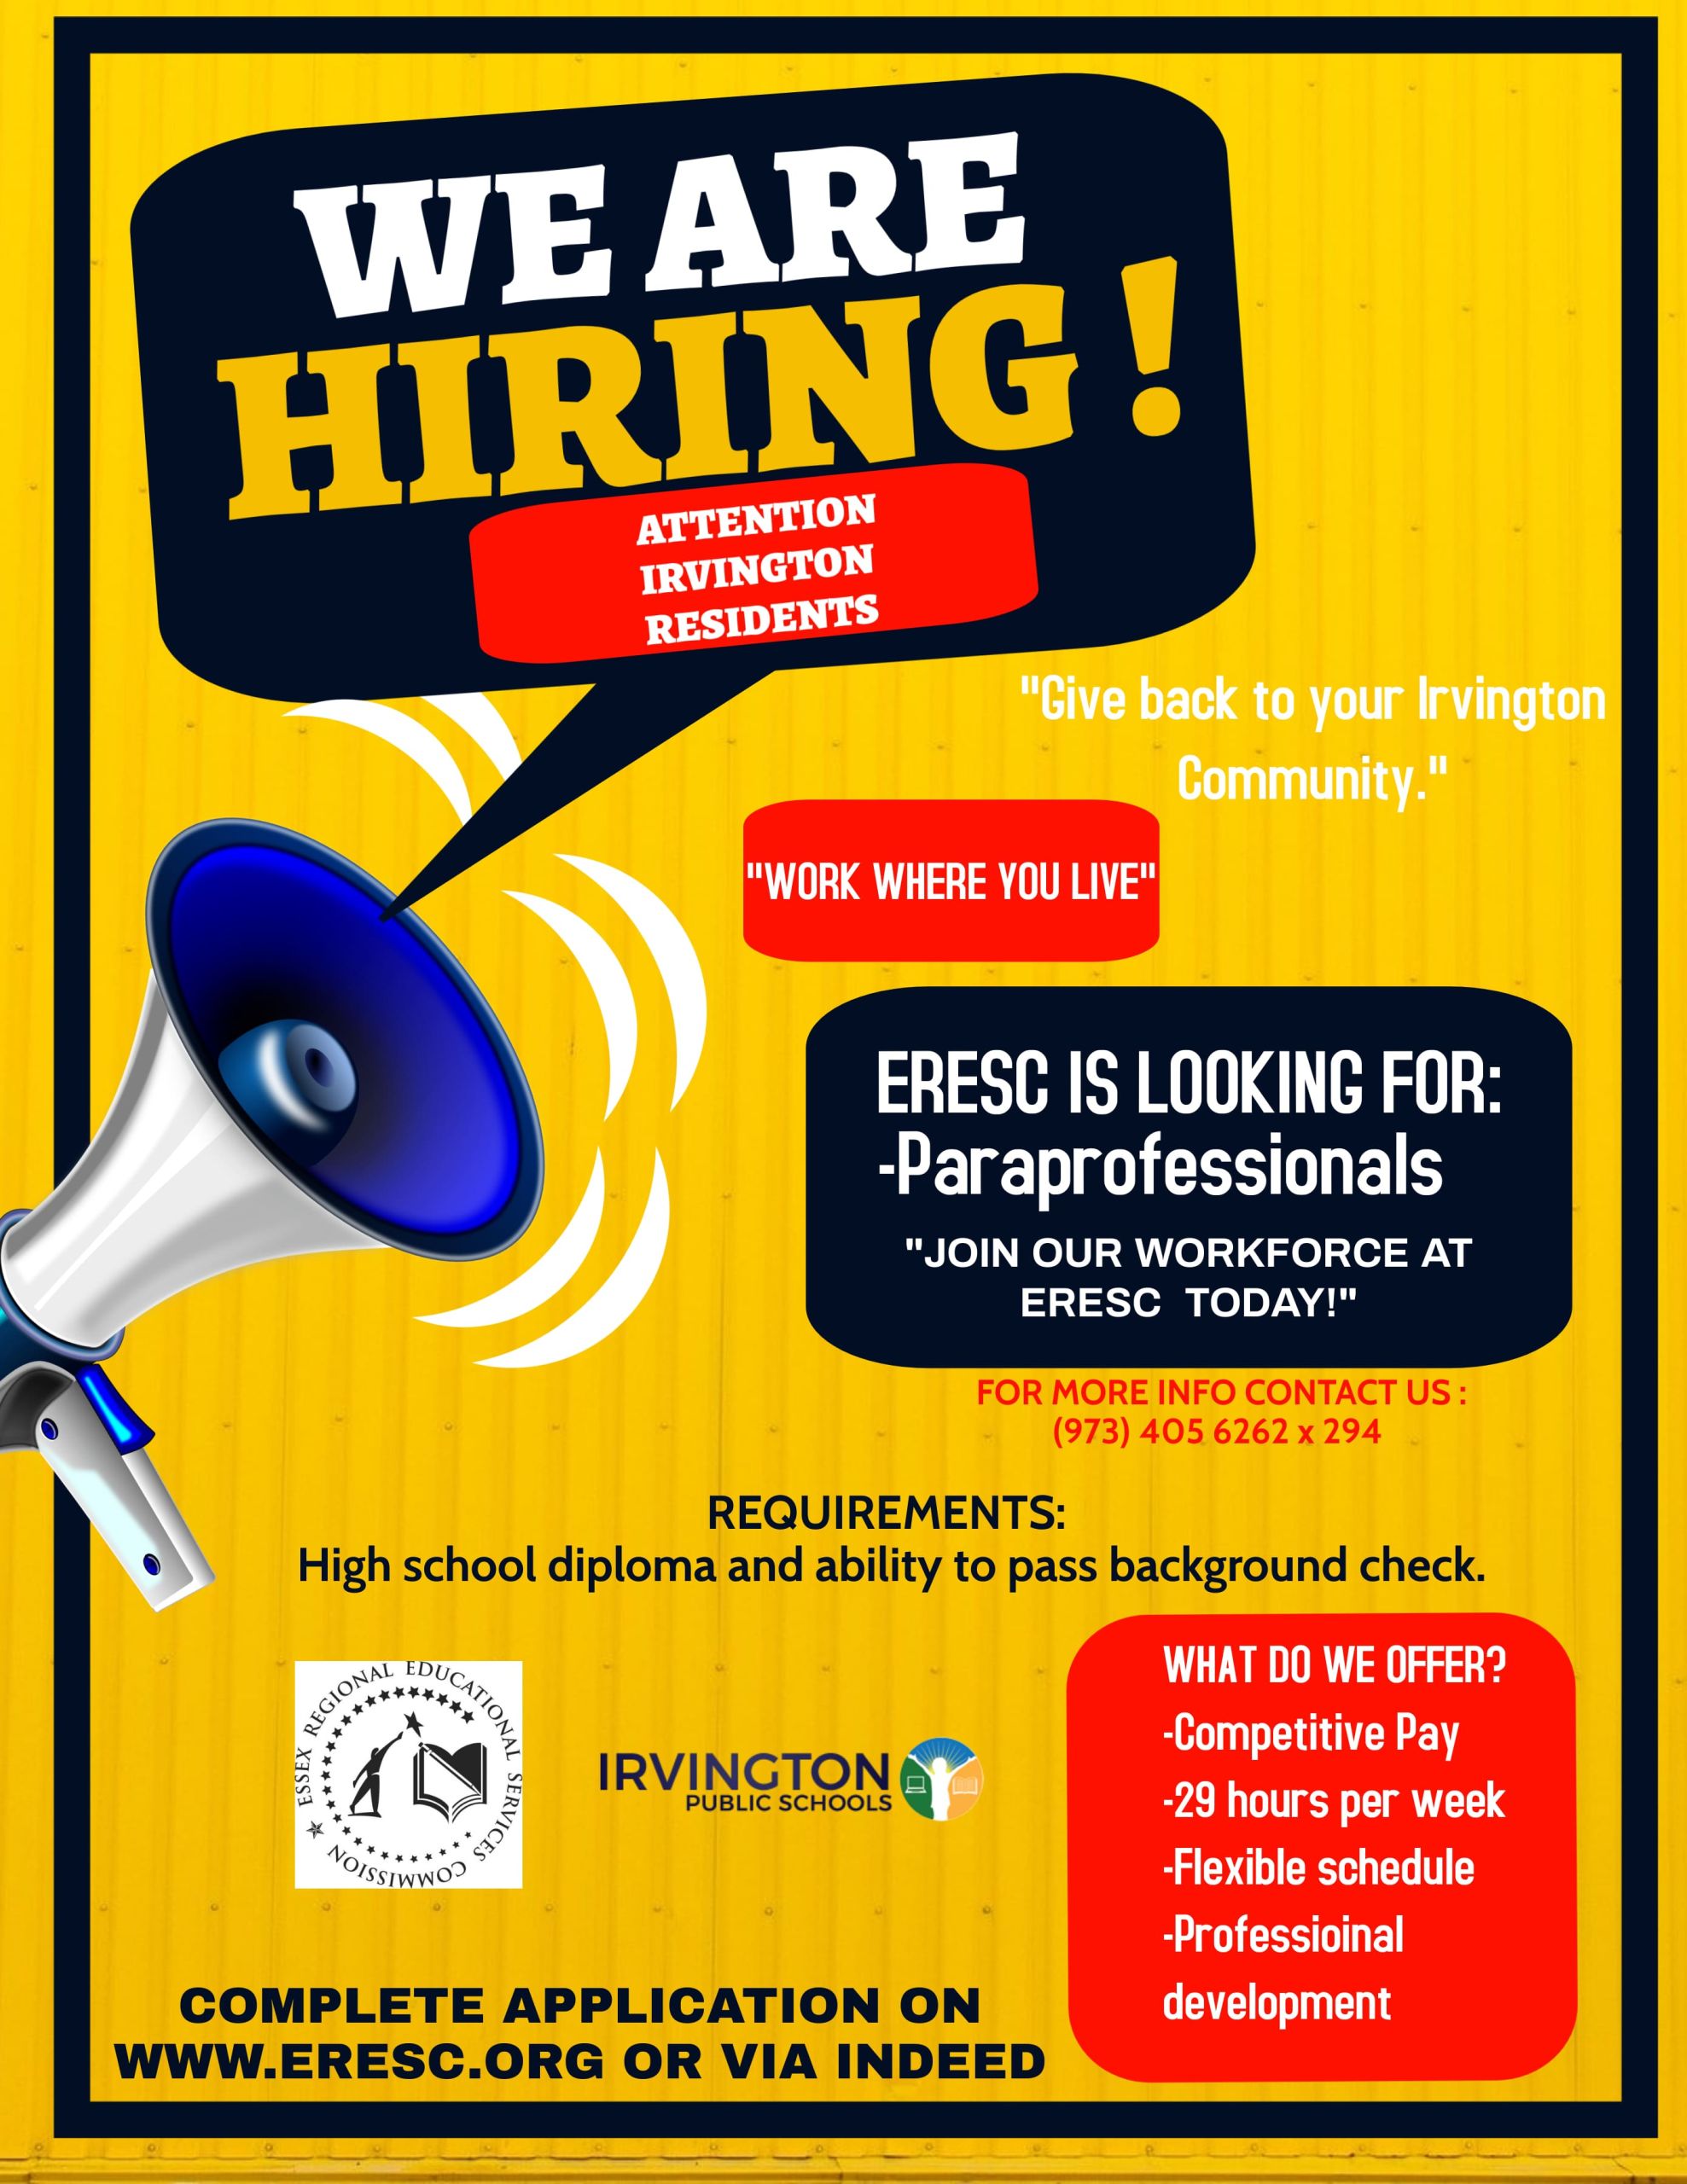 ERESC_hiring_paraprofessionals_flyer